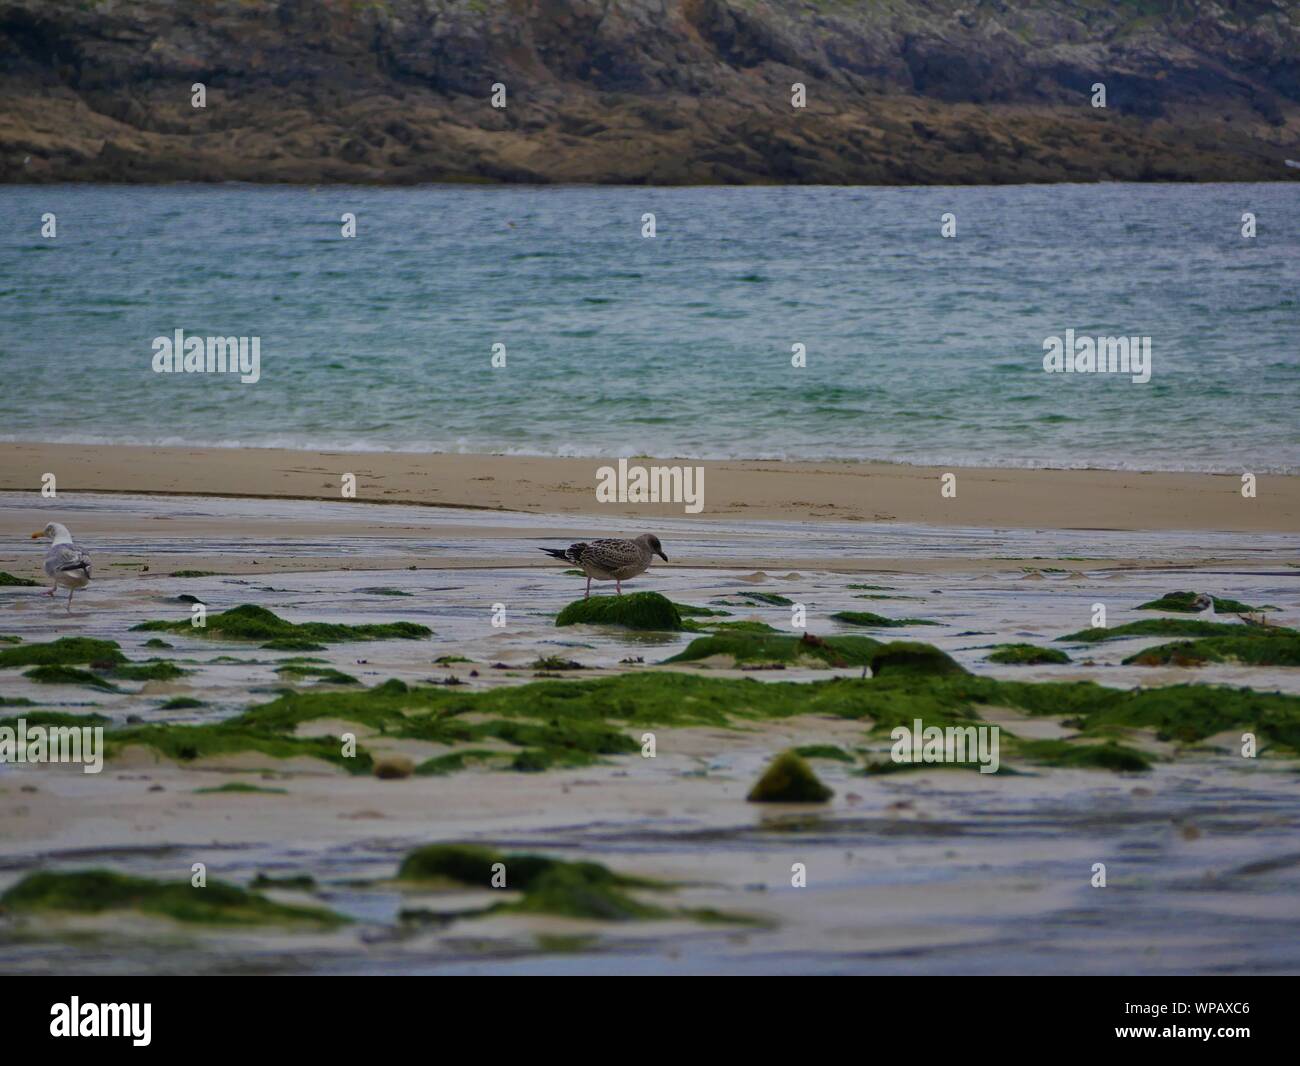 Mouette sur le Sable entre les rochers recouverts d'algues Au bord de la Mer, Plage de Brest, Gruppen de Mouettes ramassant des Vers de sable Stockfoto